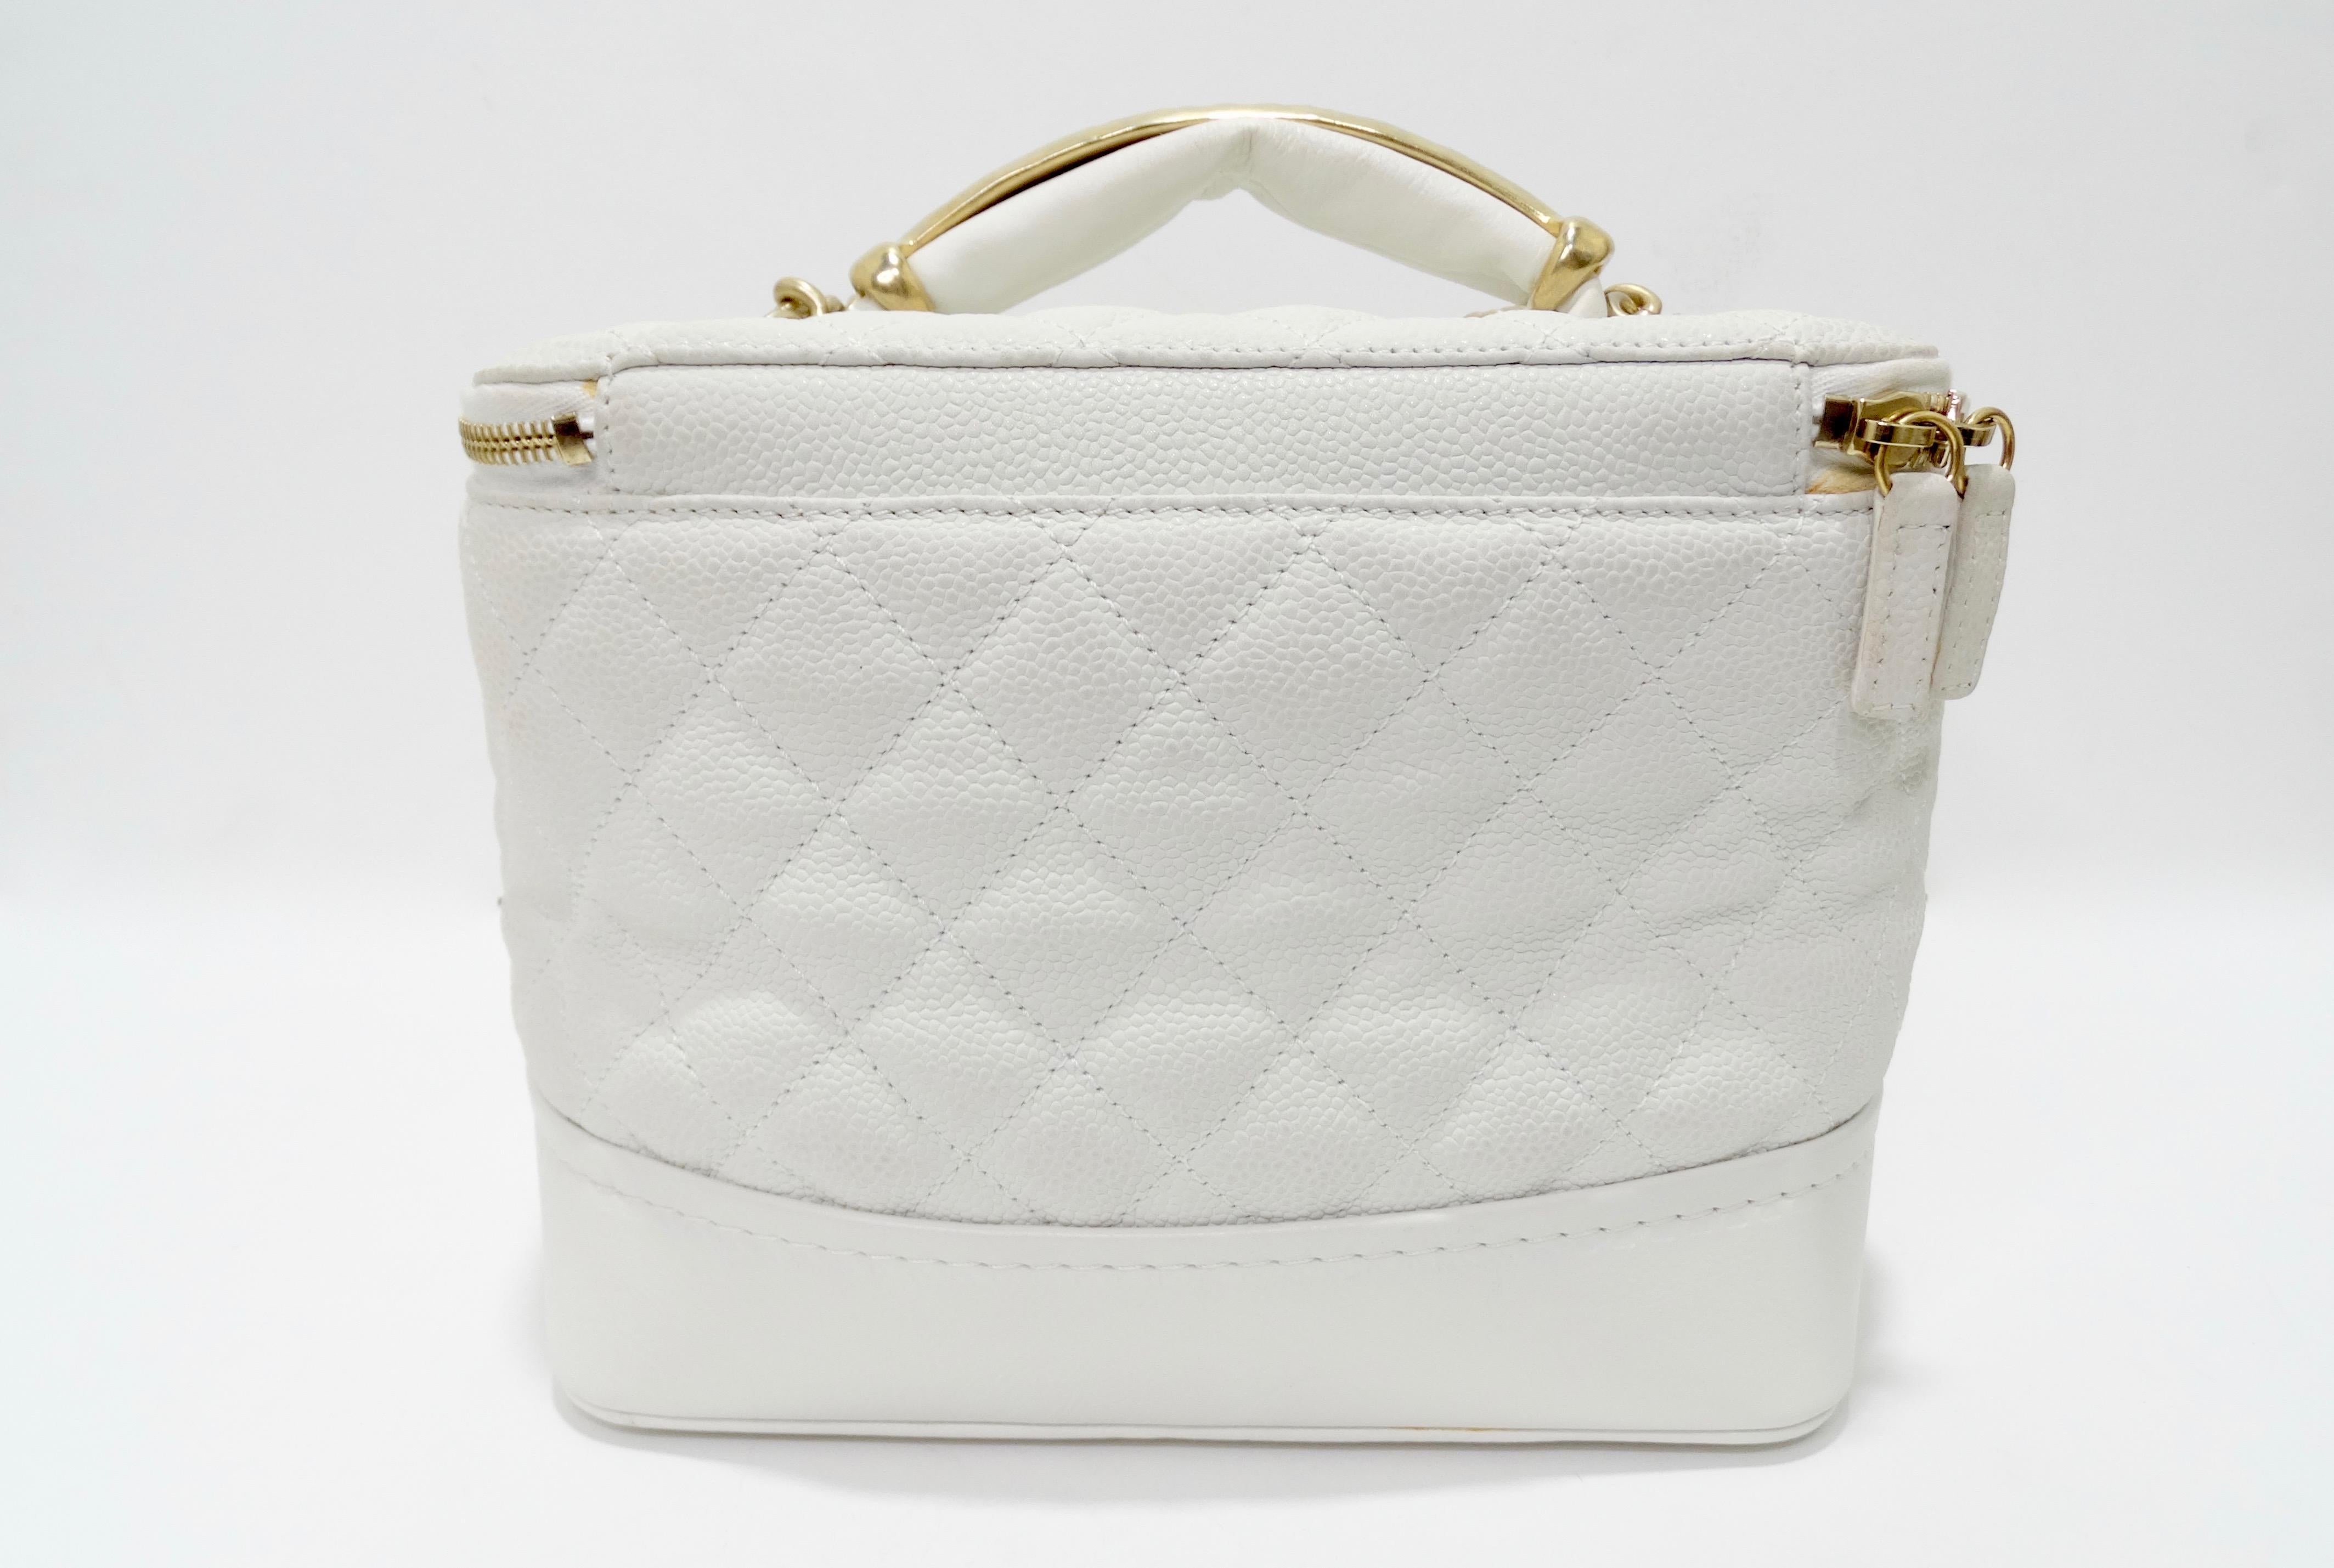 Chanel Vanity White Globe Trotter Bag 2013 Fall/Winter  1